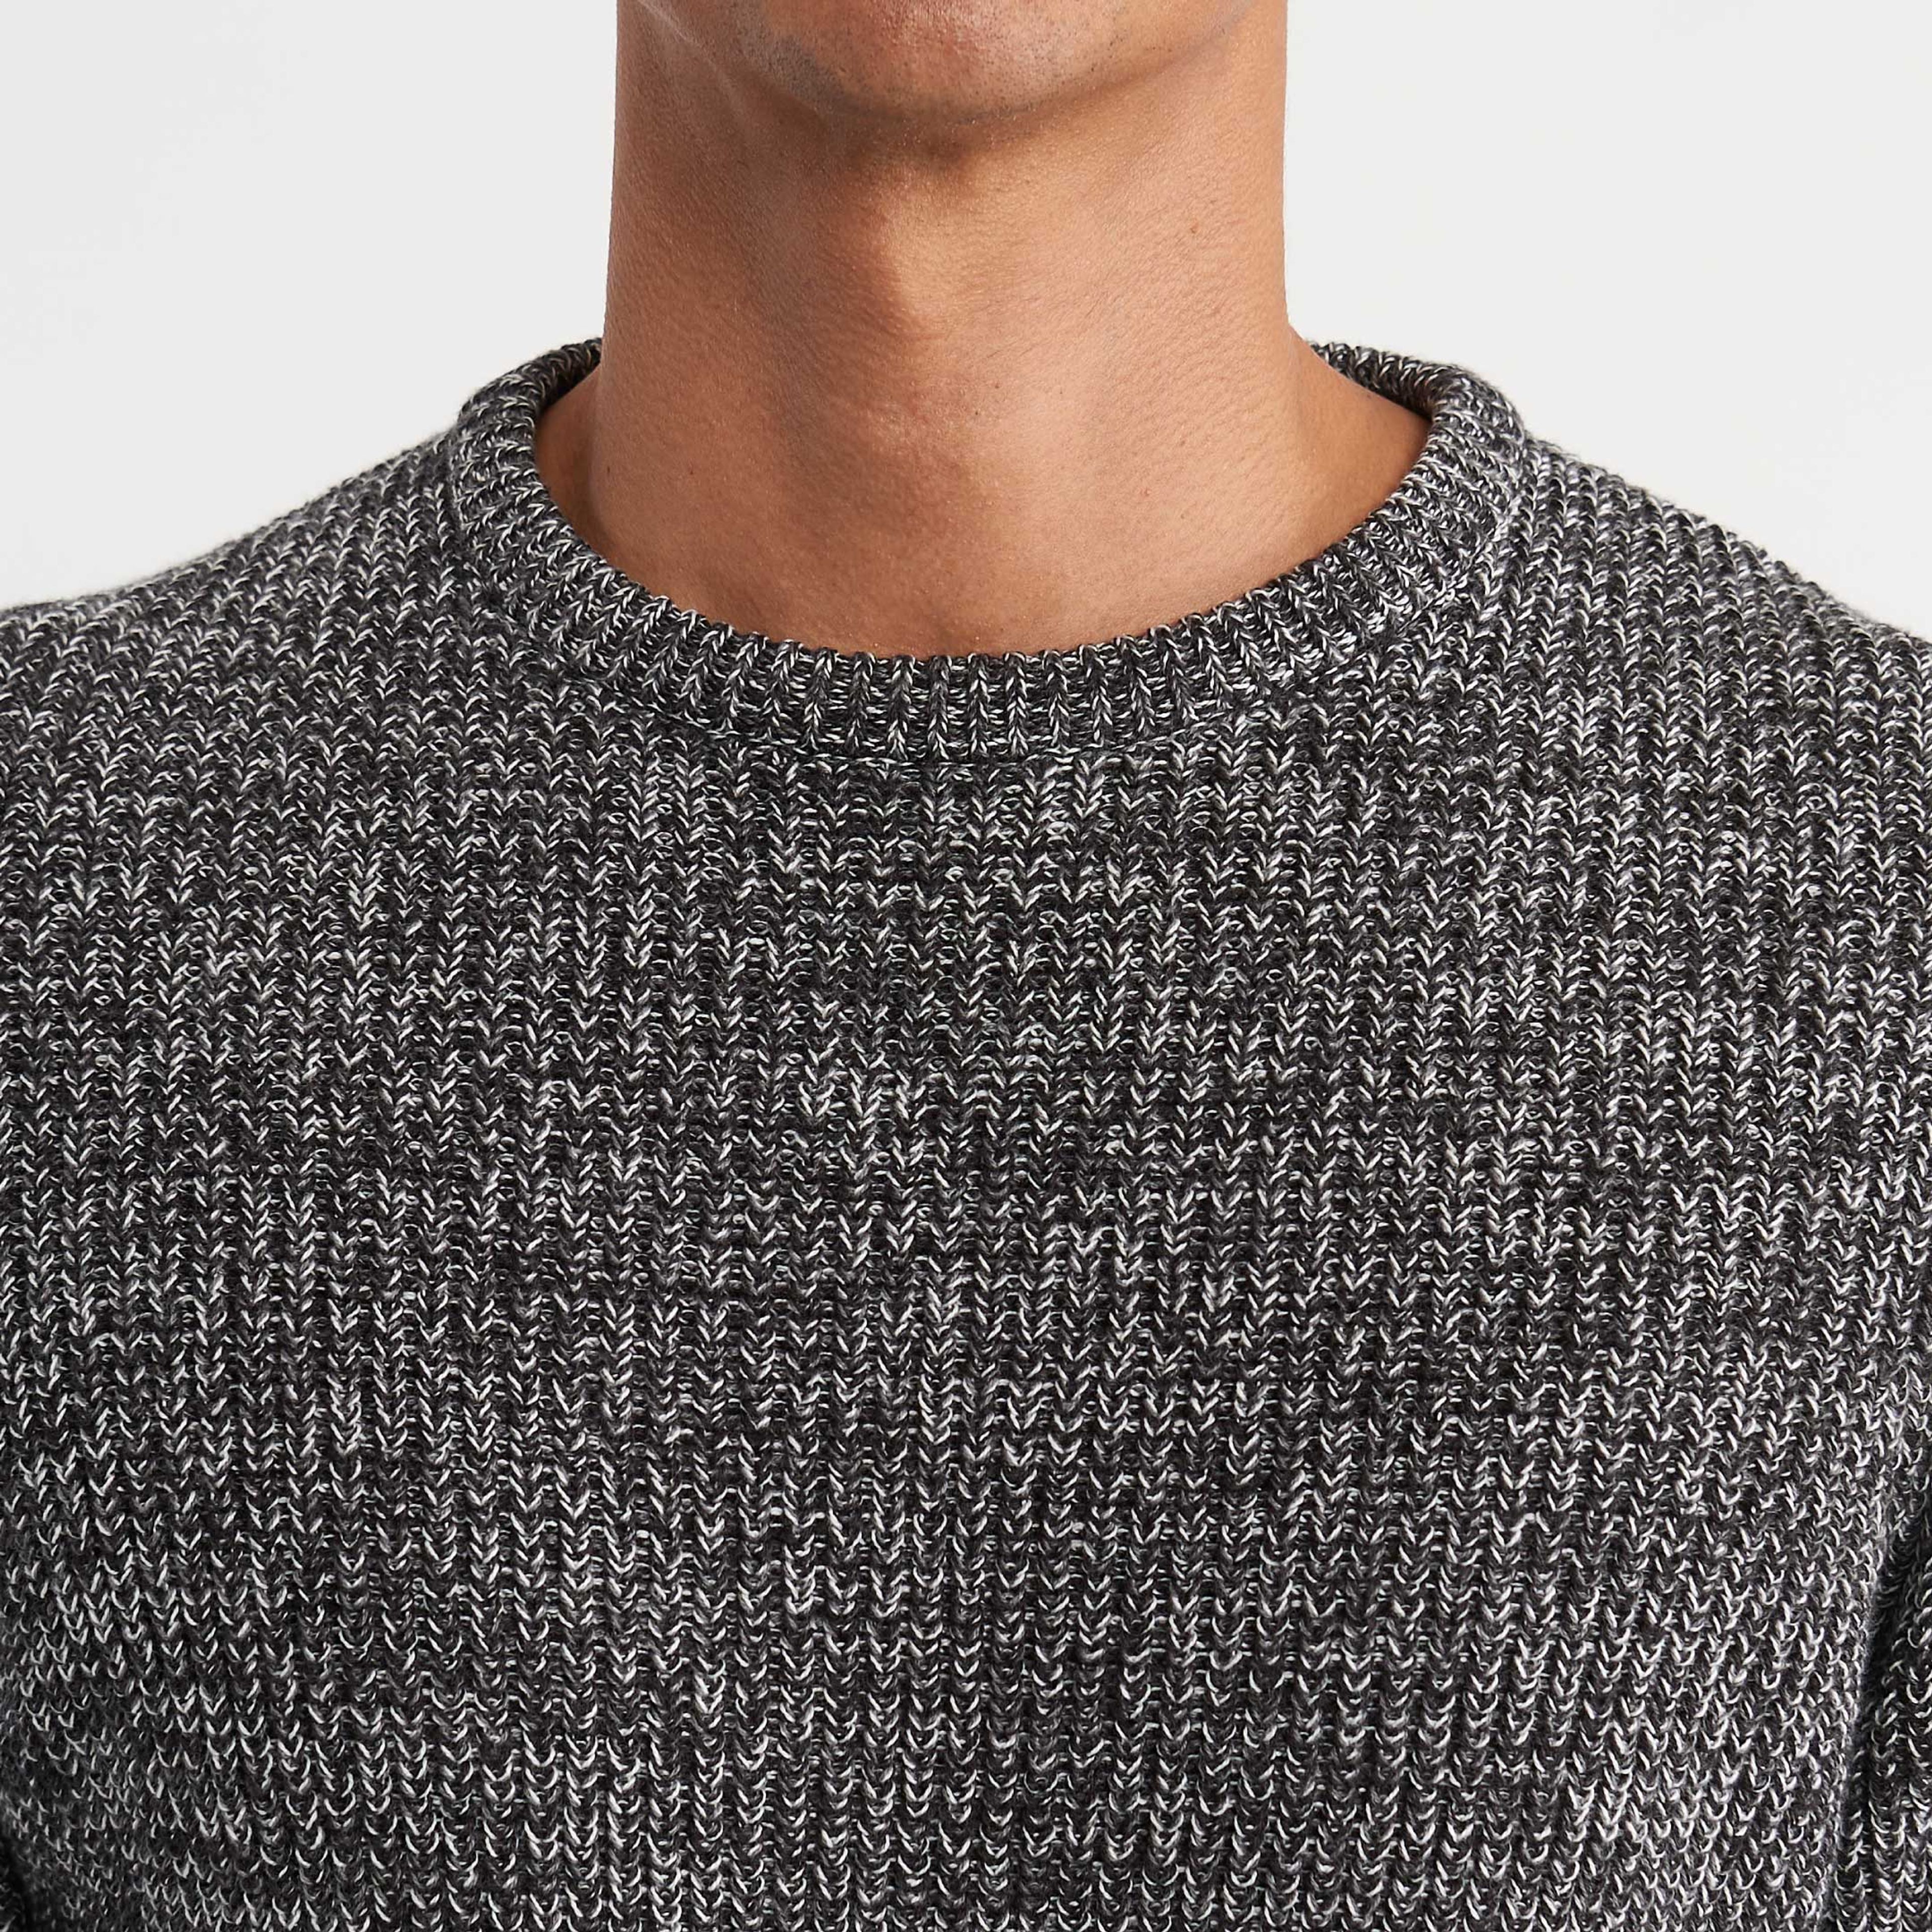 Fog Grey Knit Sweater